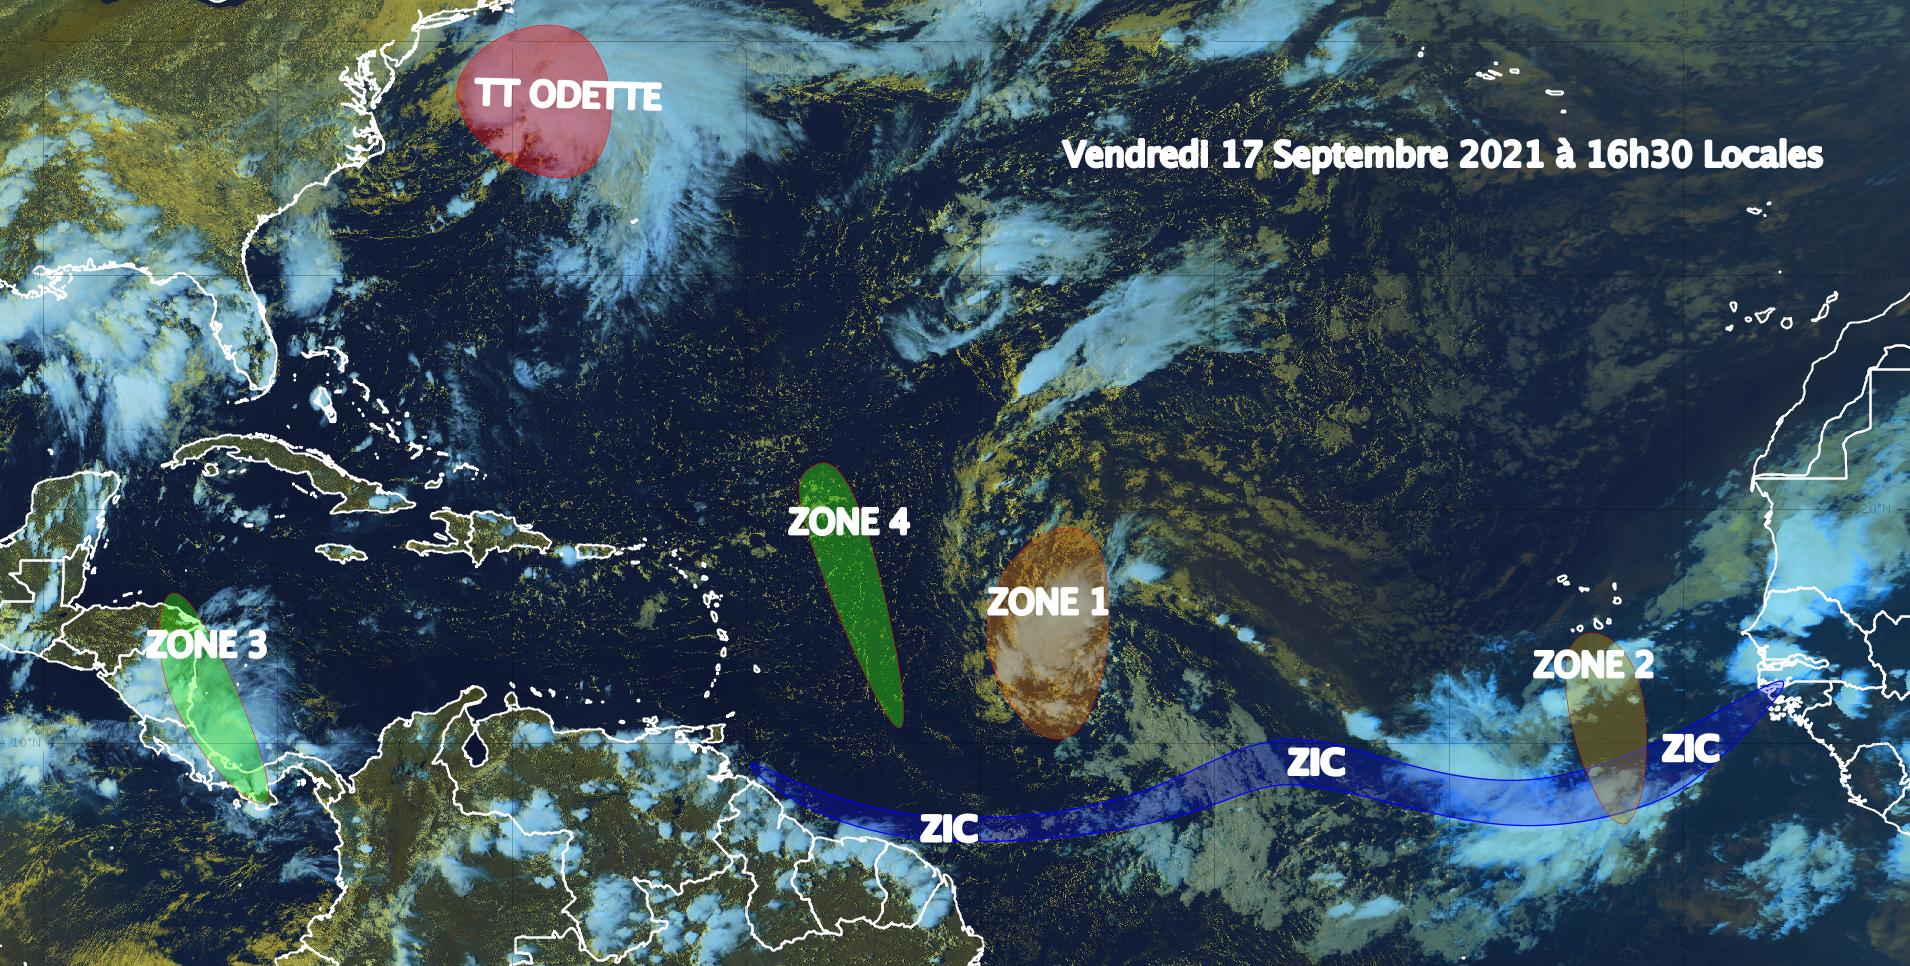     Une onde tropicale au large des Petites Antilles présente un fort potentiel de renforcement

